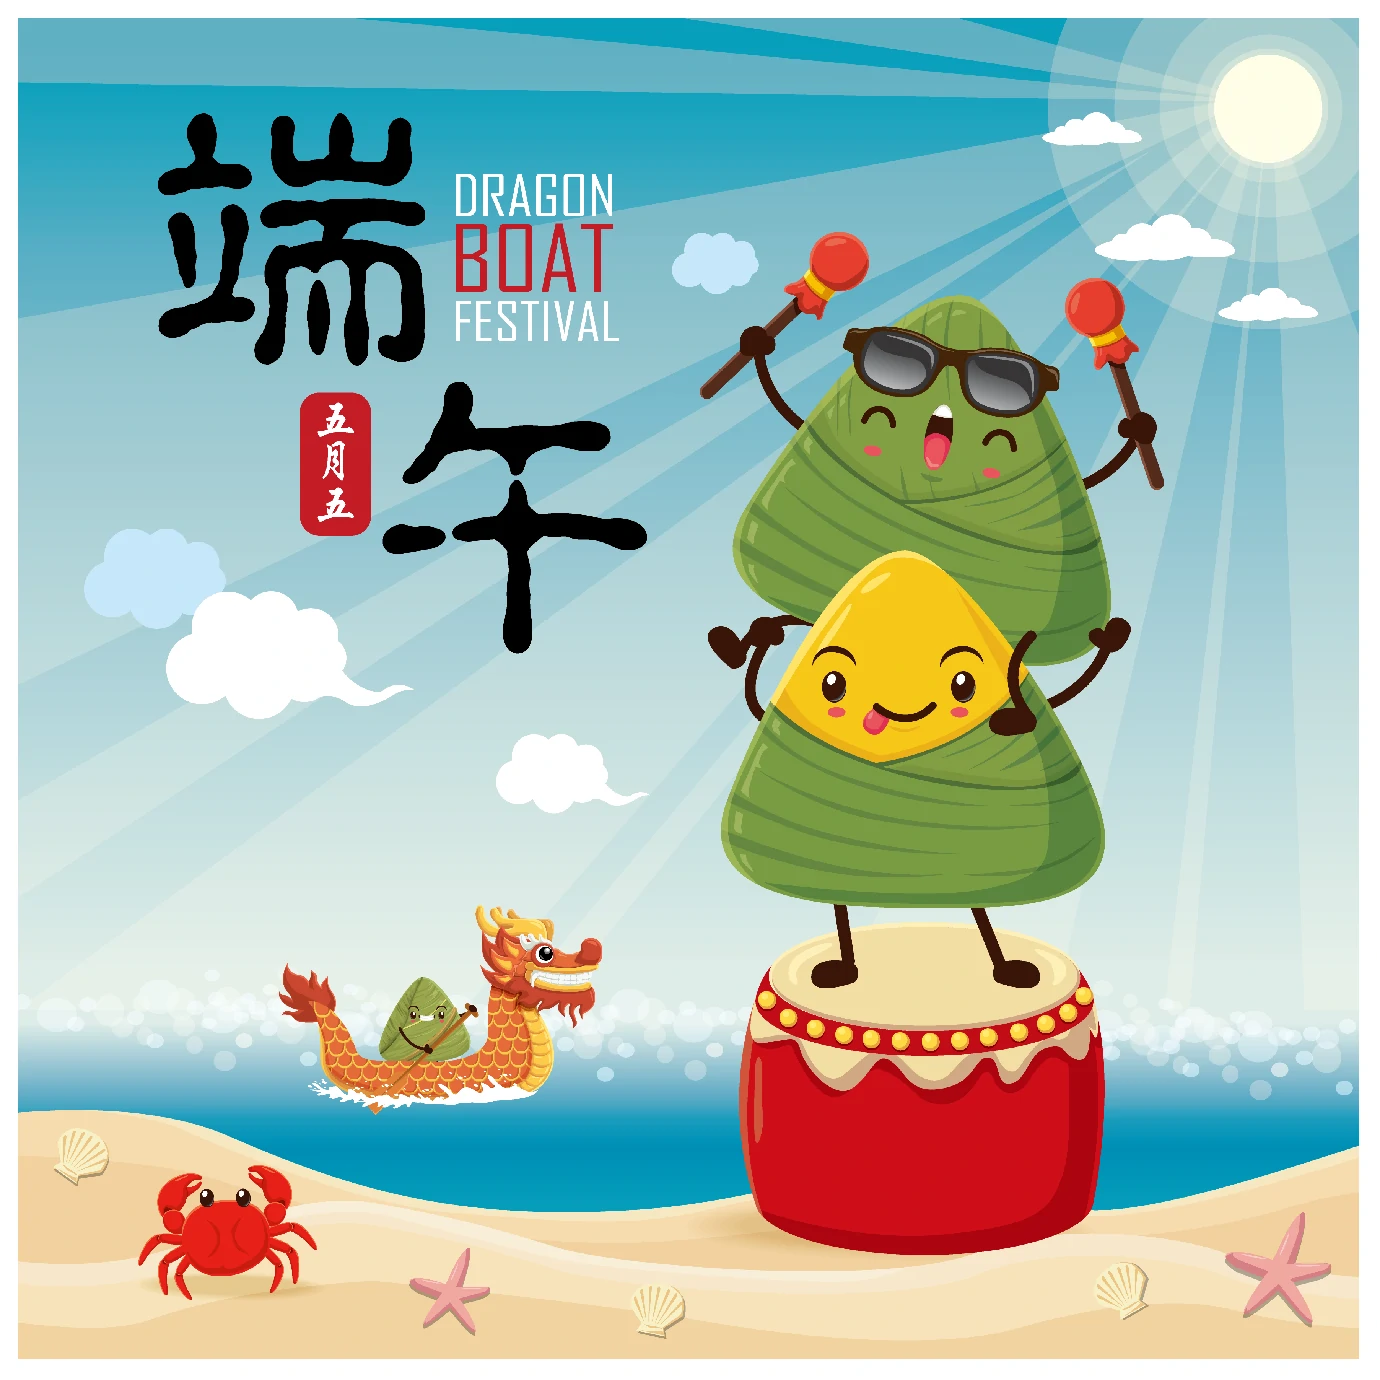 中国传统节日卡通手绘端午节赛龙舟粽子插画海报AI矢量设计素材【032】